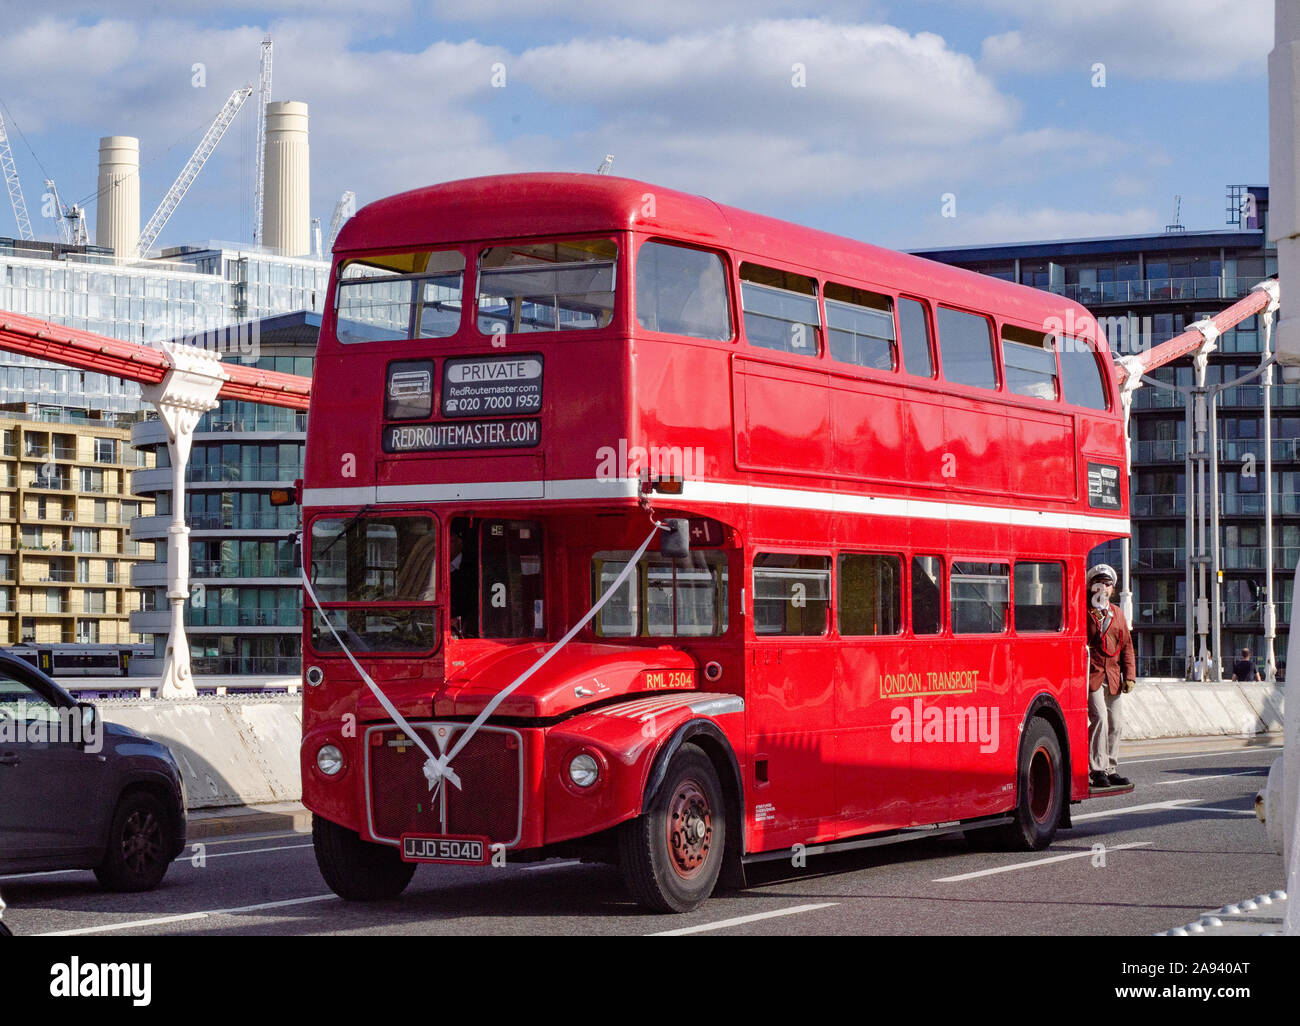 Un iconico autobus rosso a due piani d'epoca a chelsea Bridge london pubblicizzato per l'uso degli eventi Foto Stock